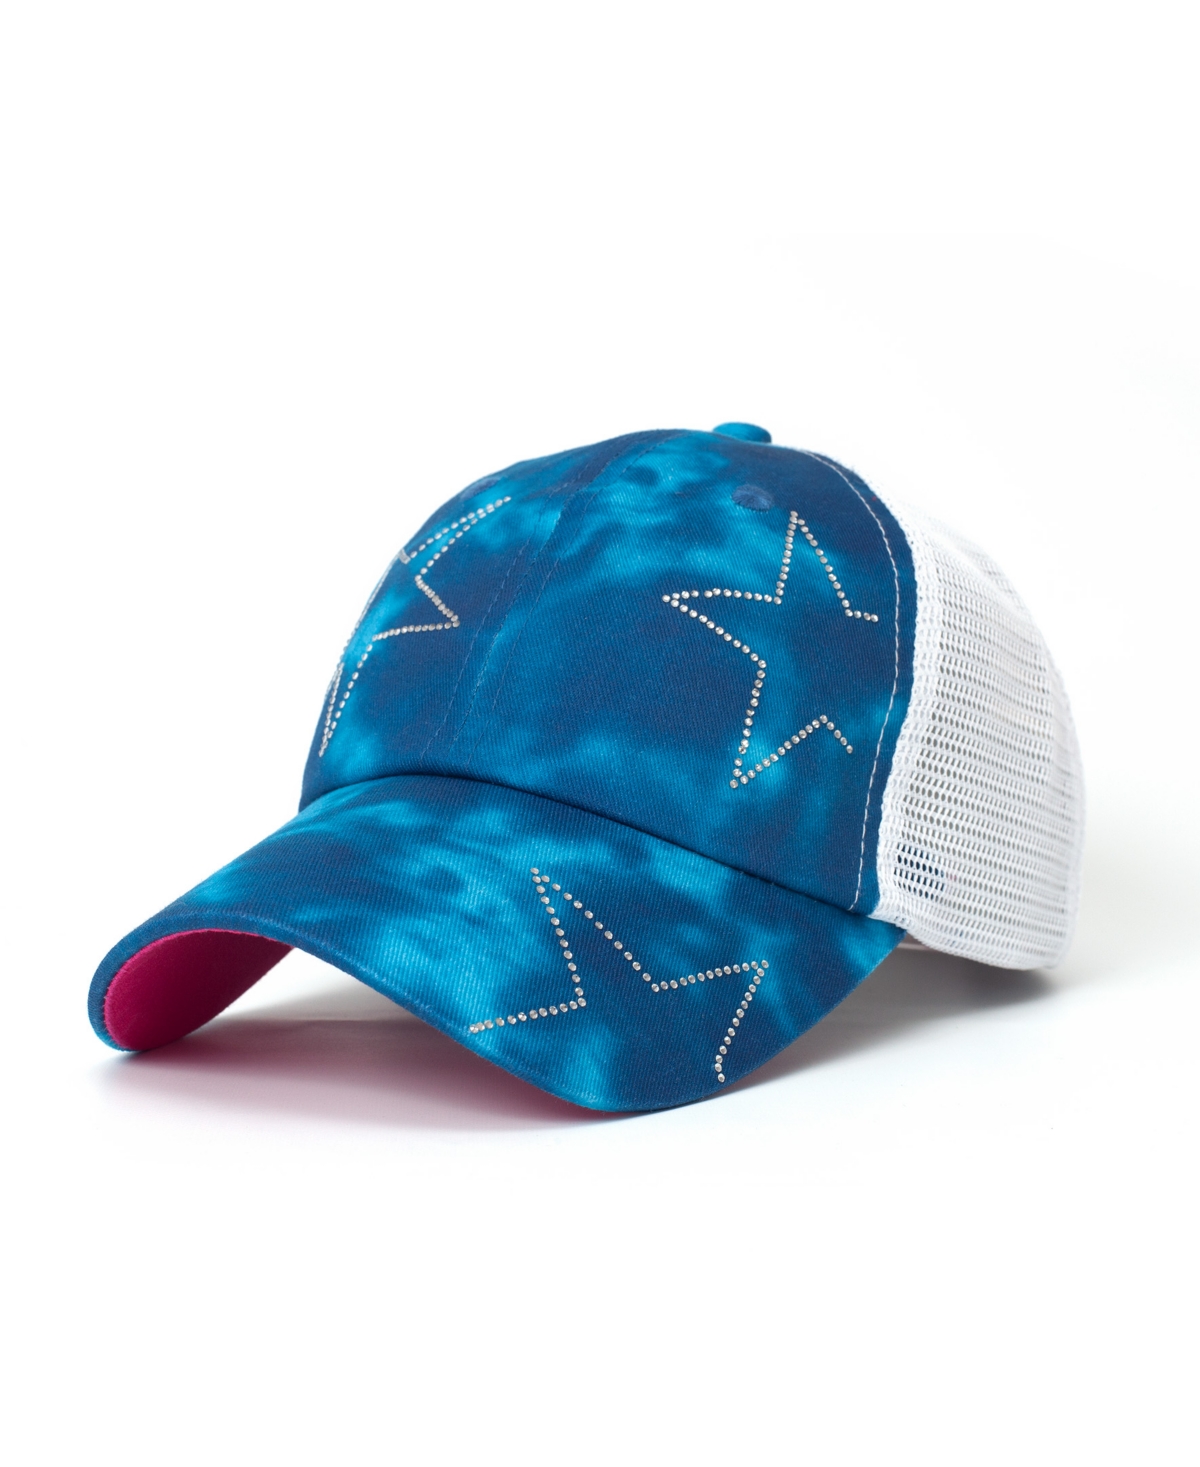 Starry Lady Women's Adjustable Snap Back Mesh Blue Tie Dye Studded Star Trucker Hat - Blue